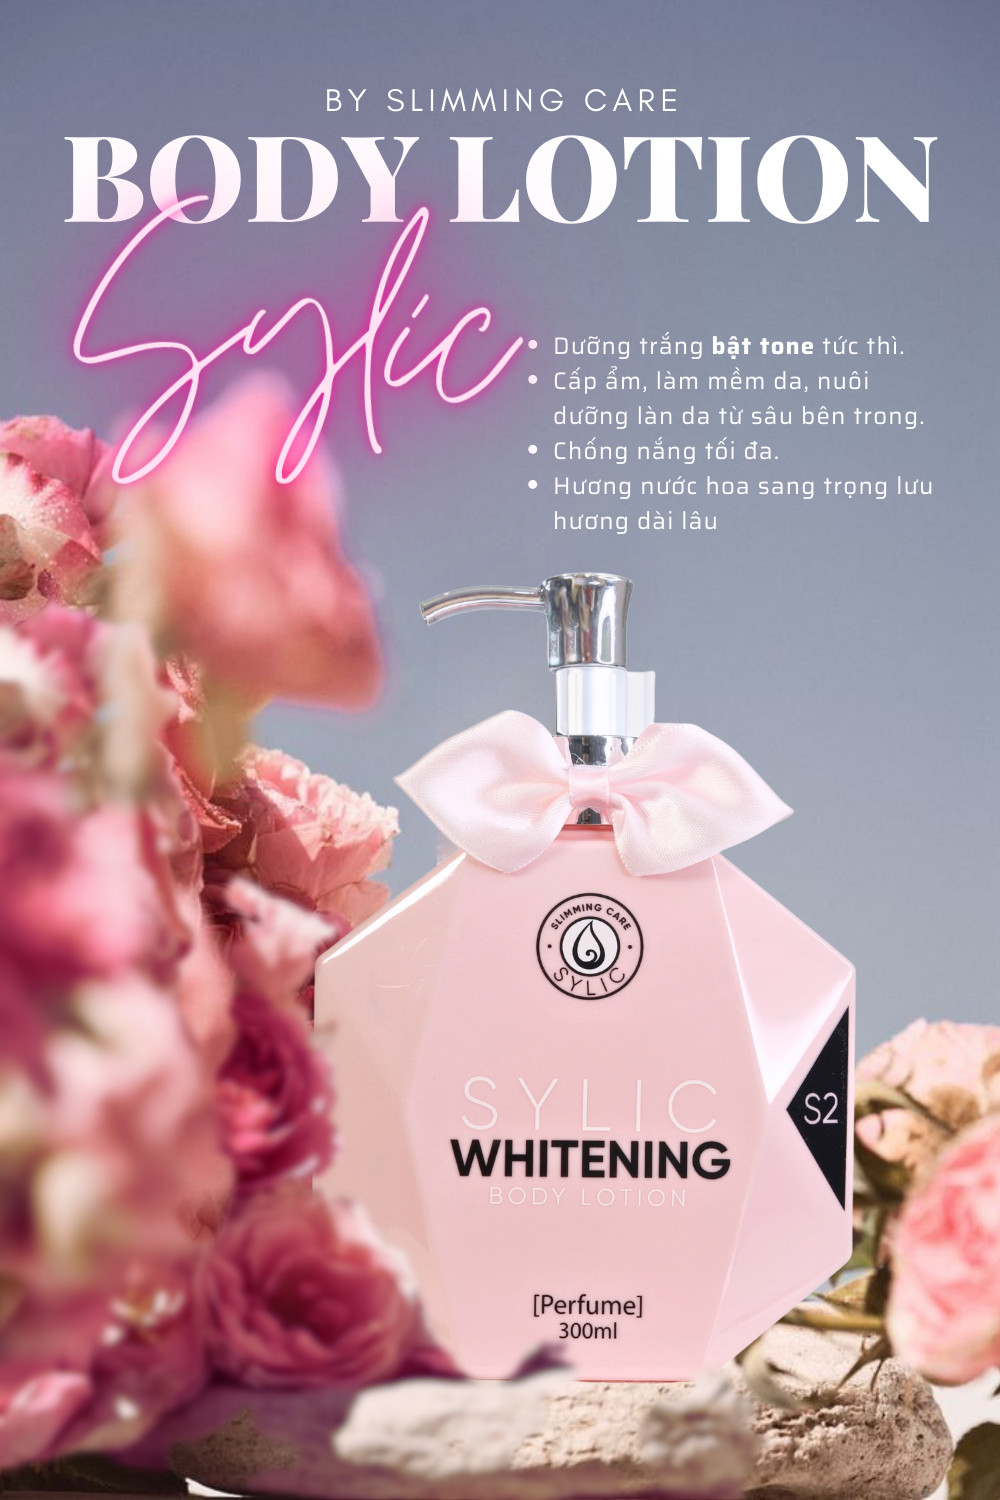 Kem Dưỡng Trắng Da SYLIC Whitening Body Lotion Full Size Hương nước hoa - Dưỡng trắng, cấp ẩm, chống nắng